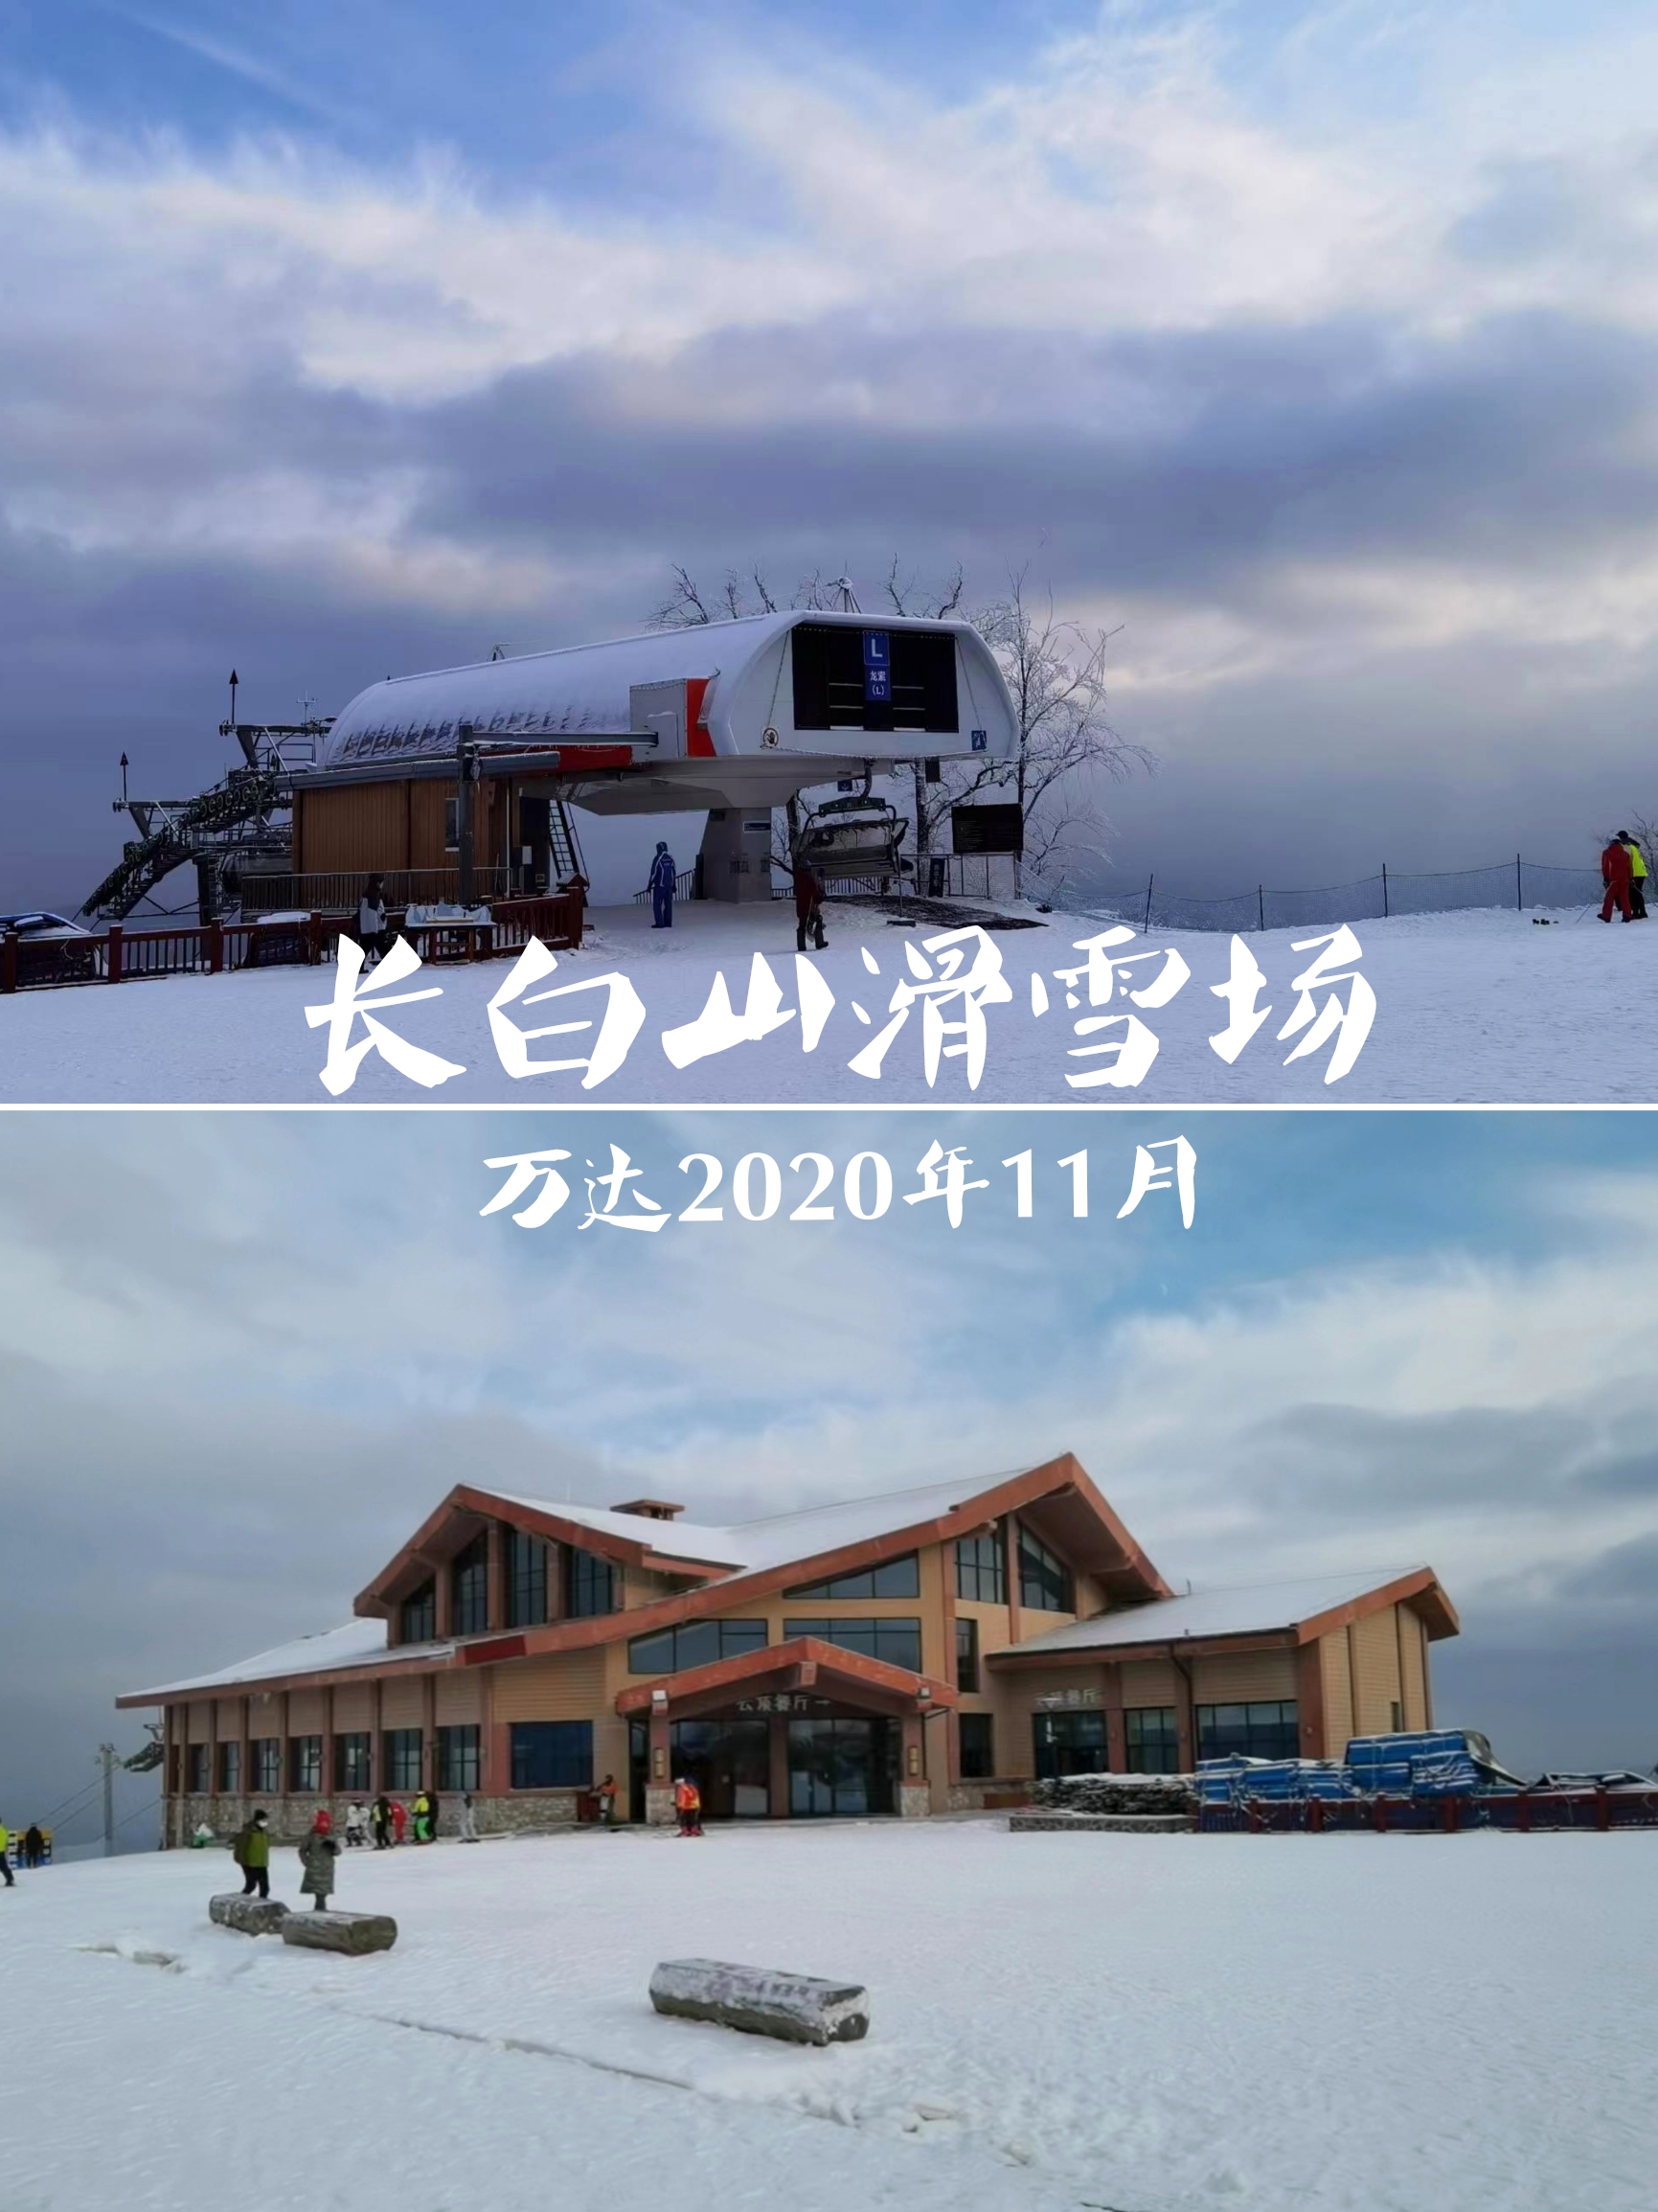 万达长白山国际滑雪场-2020年11月的场景